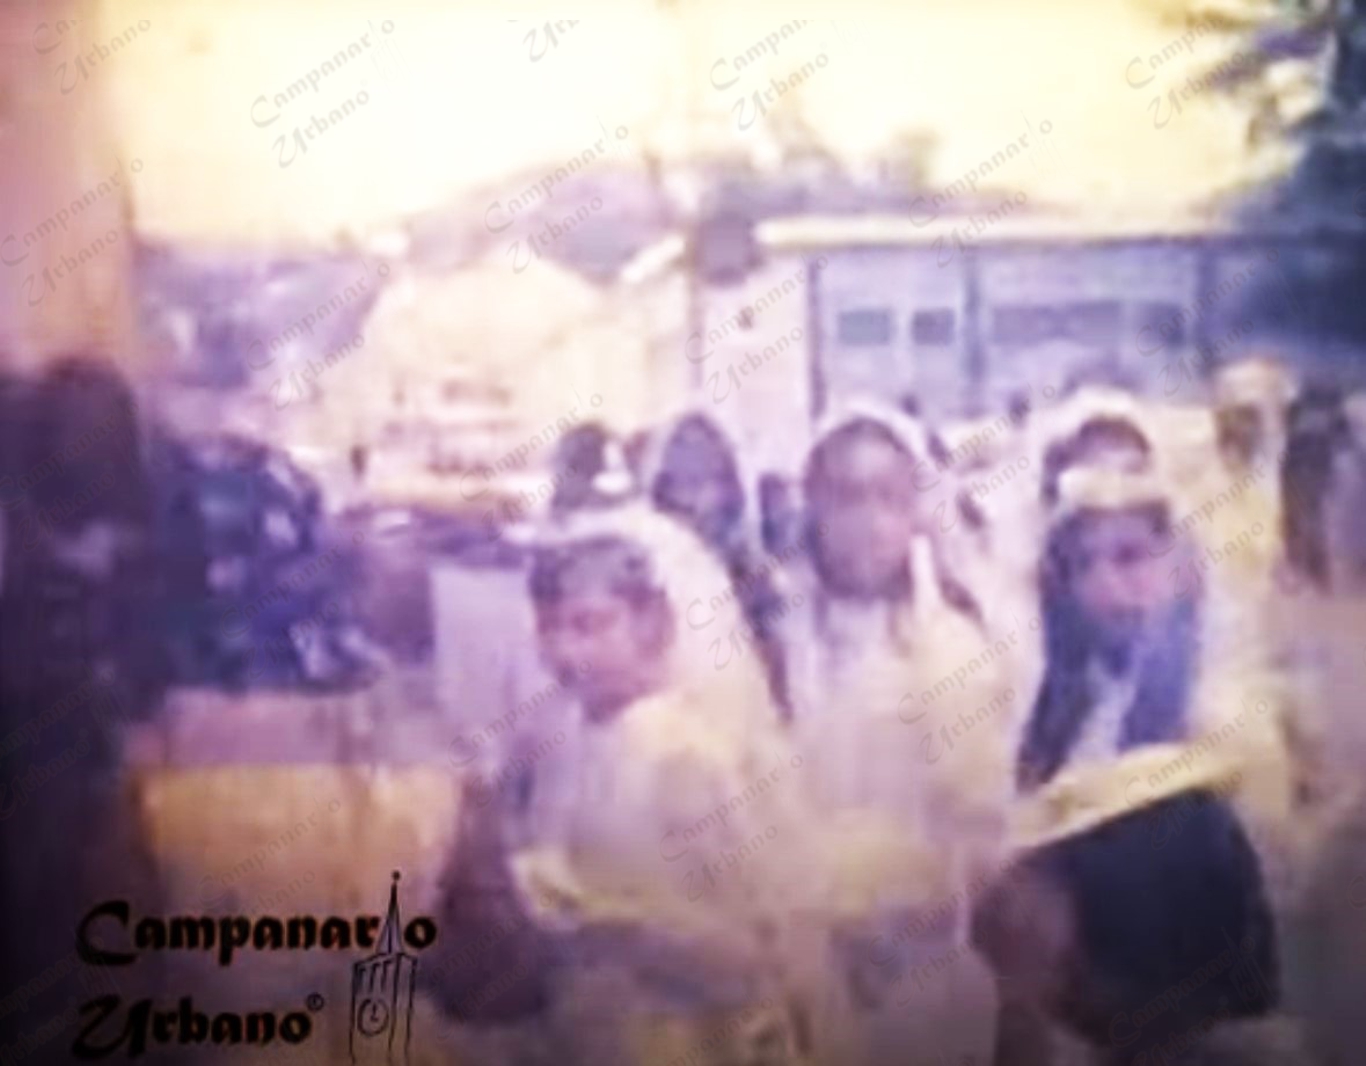 Fotografías: Primera Comunión de las niñas del Colegio Parroquial Jesús María Marrero en la Iglesia de Nuestra Señora de Copacabana de Guarenas, década 1960.